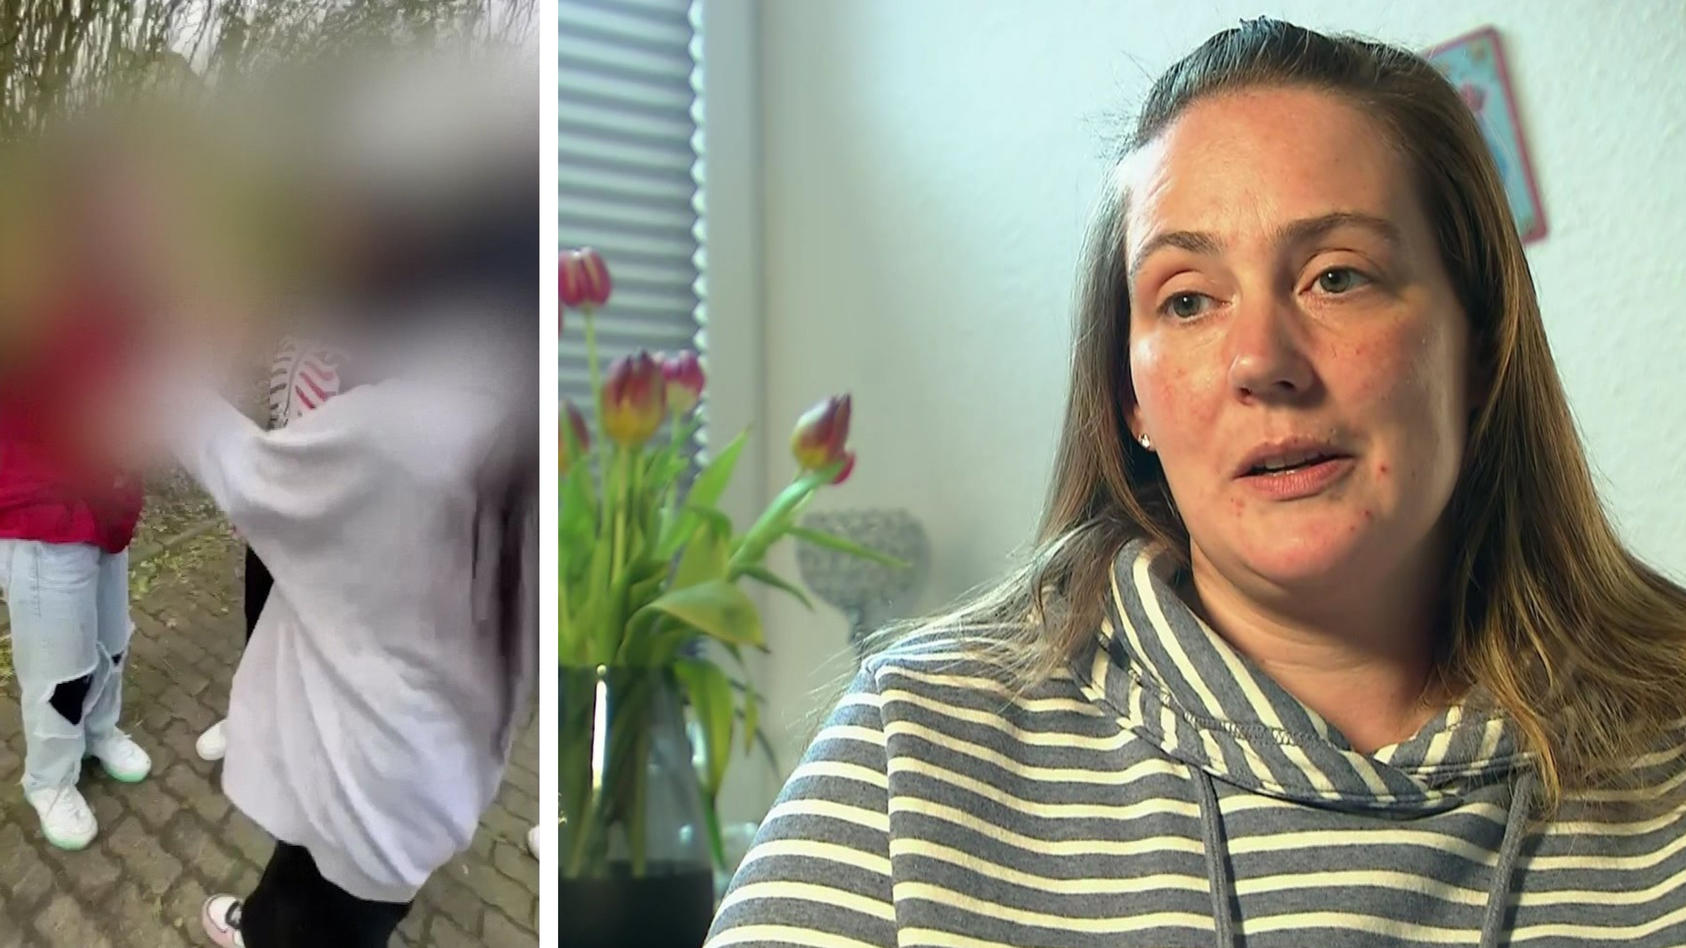 Täterinnen von Heide entschuldigen sich bei ihrem Opfer Nach brutalem Angriff auf 13-Jährige